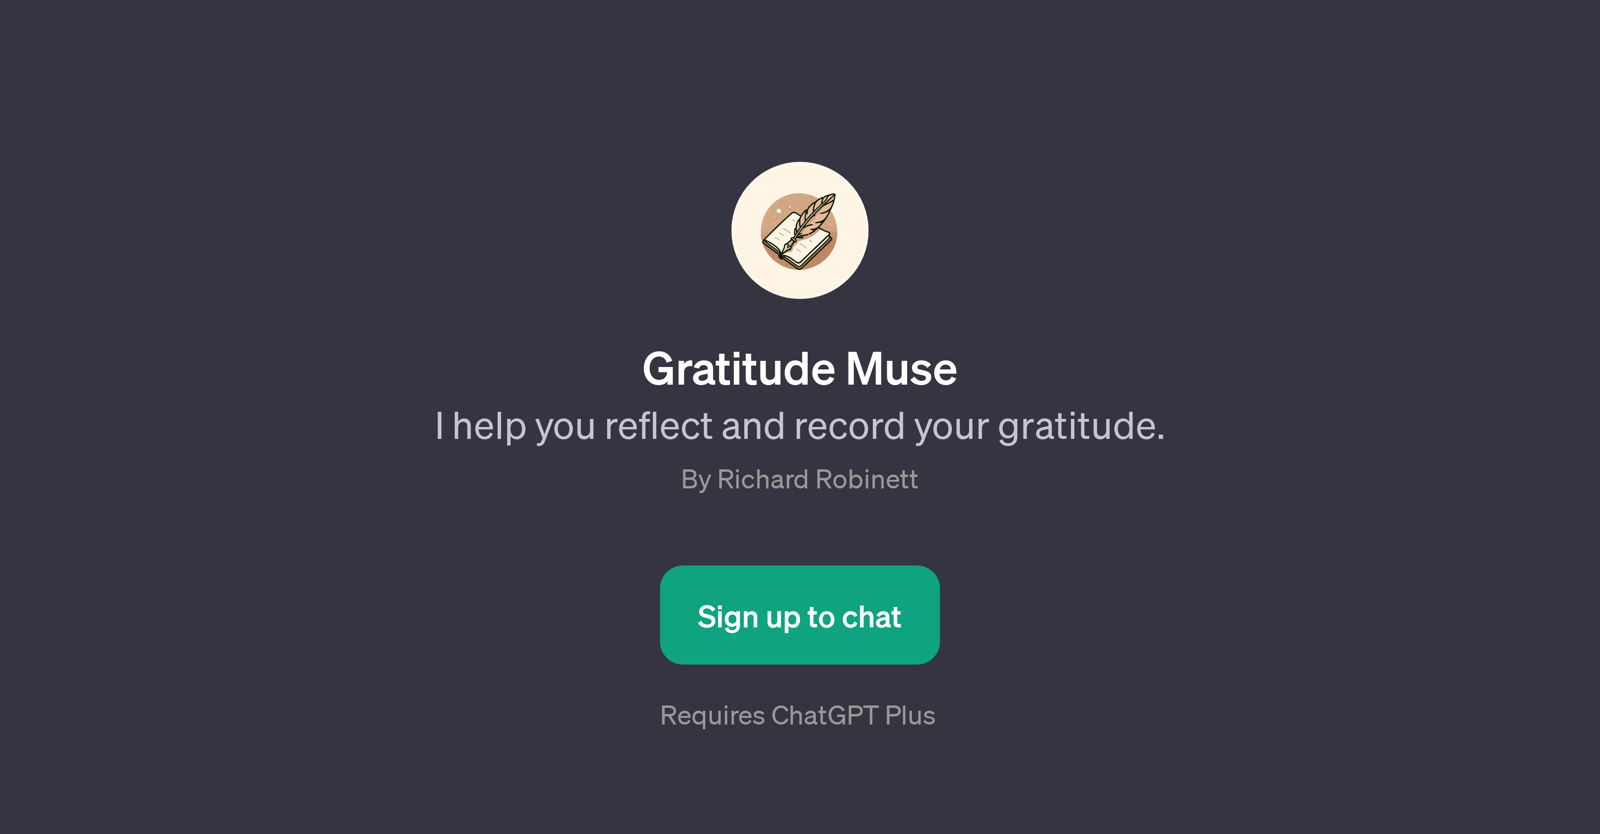 Gratitude Muse website